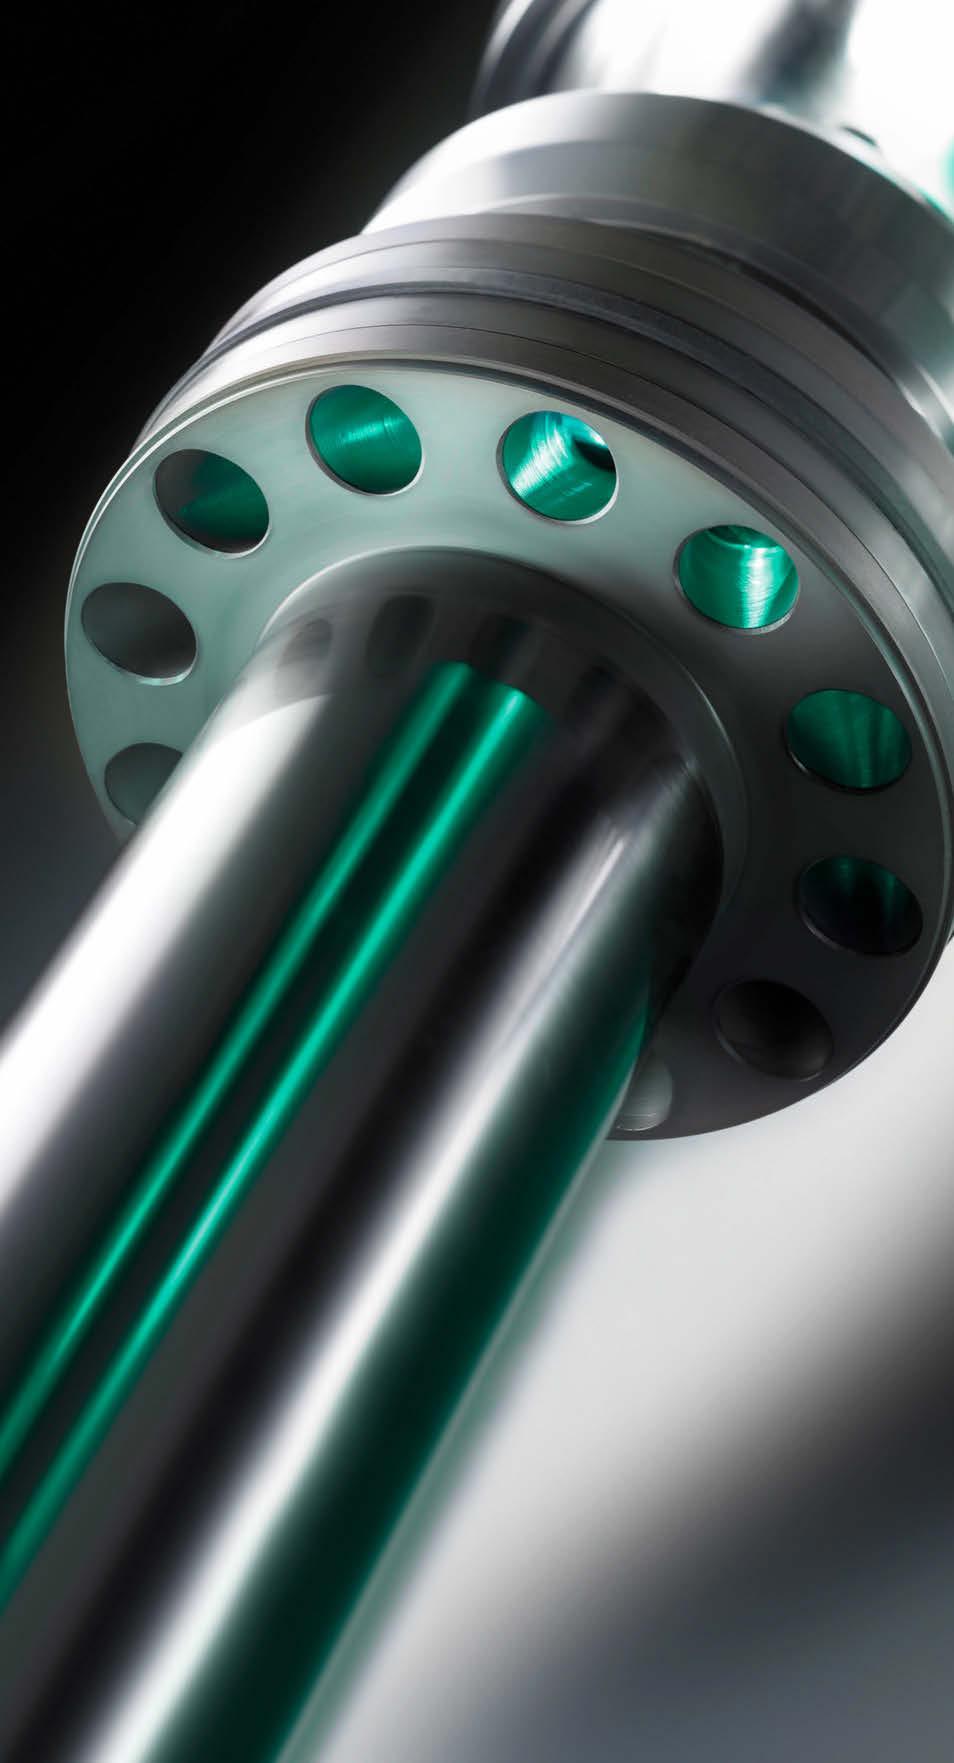 Sistema cilindro ad efficienza energetica L esclusivo sistema a pistoni differenziali sviluppato da ARBURG consente un cambio dell olio efficace e riduce i consumi energetici per via del minor